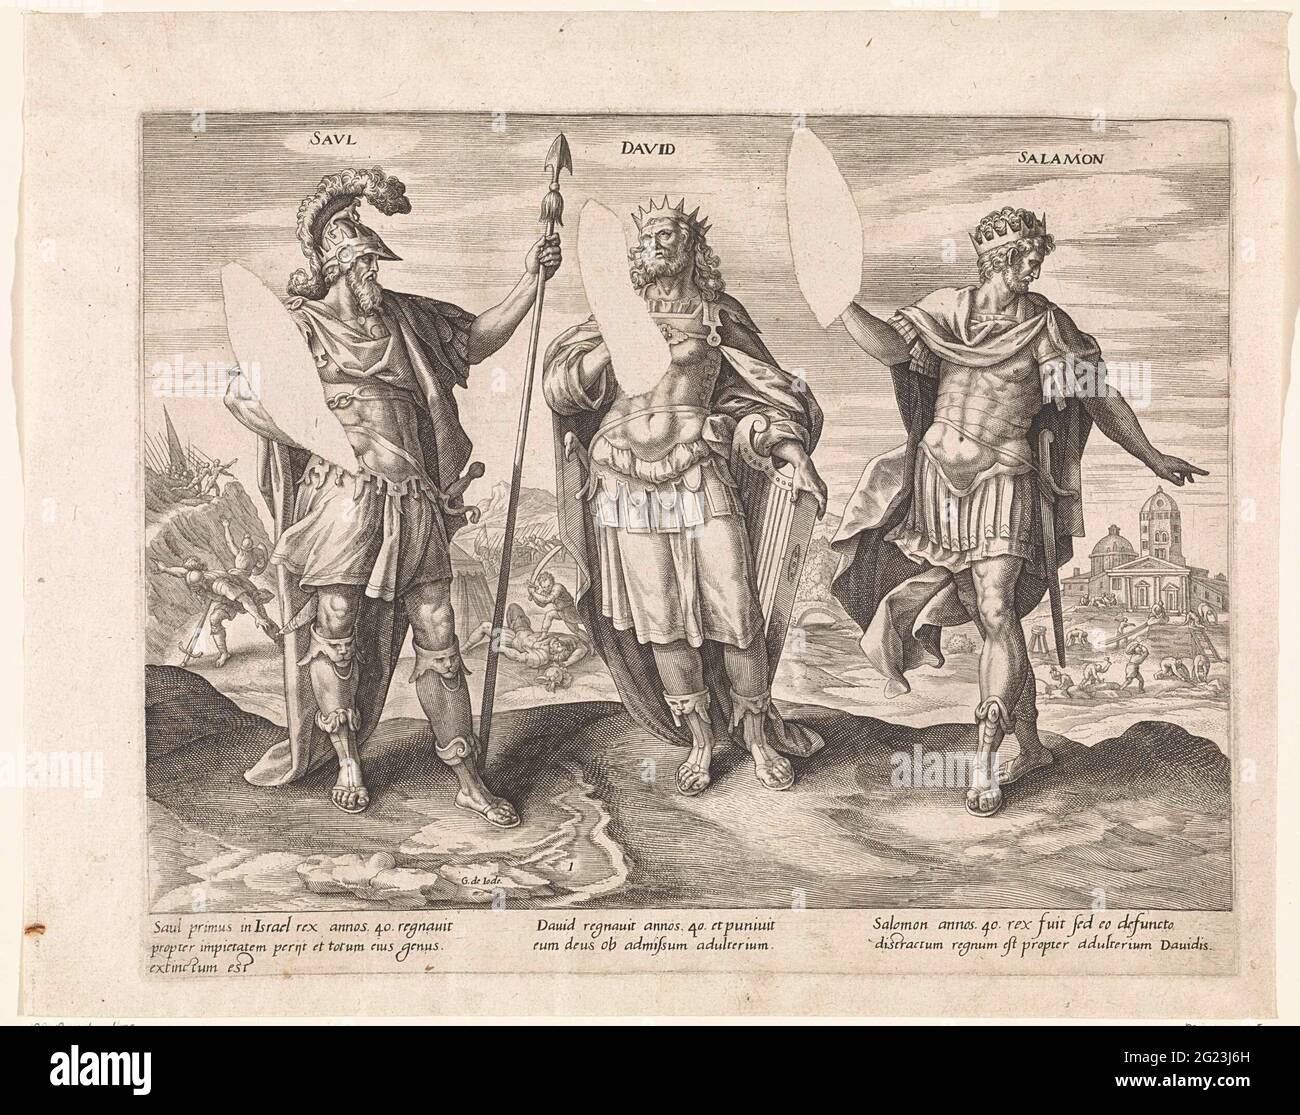 Saül, David et Salomon; Rois de Juda; Thésaurus Sacrarum historiarum  Veteris Témenti (...). Les rois Saül, avec la lance en main, David, avec la  harpe en main et Salomon. En arrière-plan des